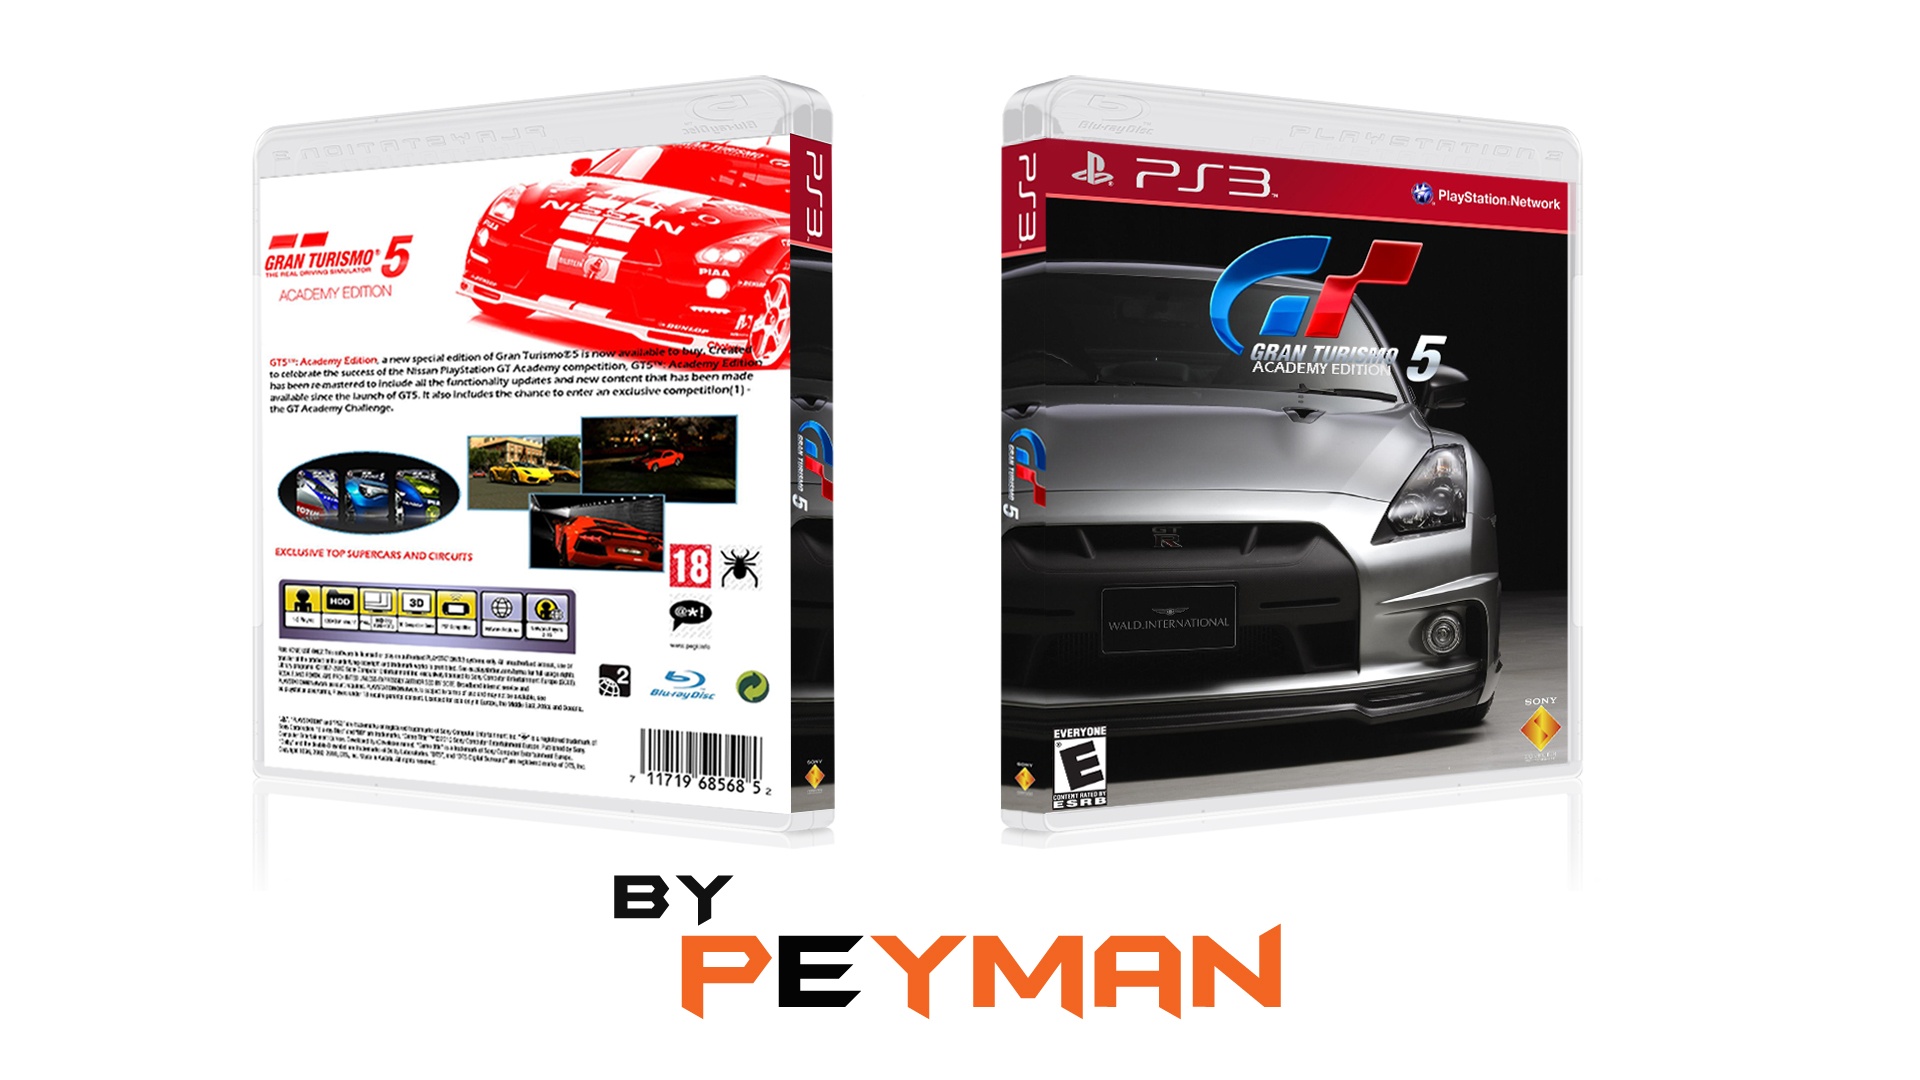 Gran Turismo 5 Academy Edition - PS3 buy